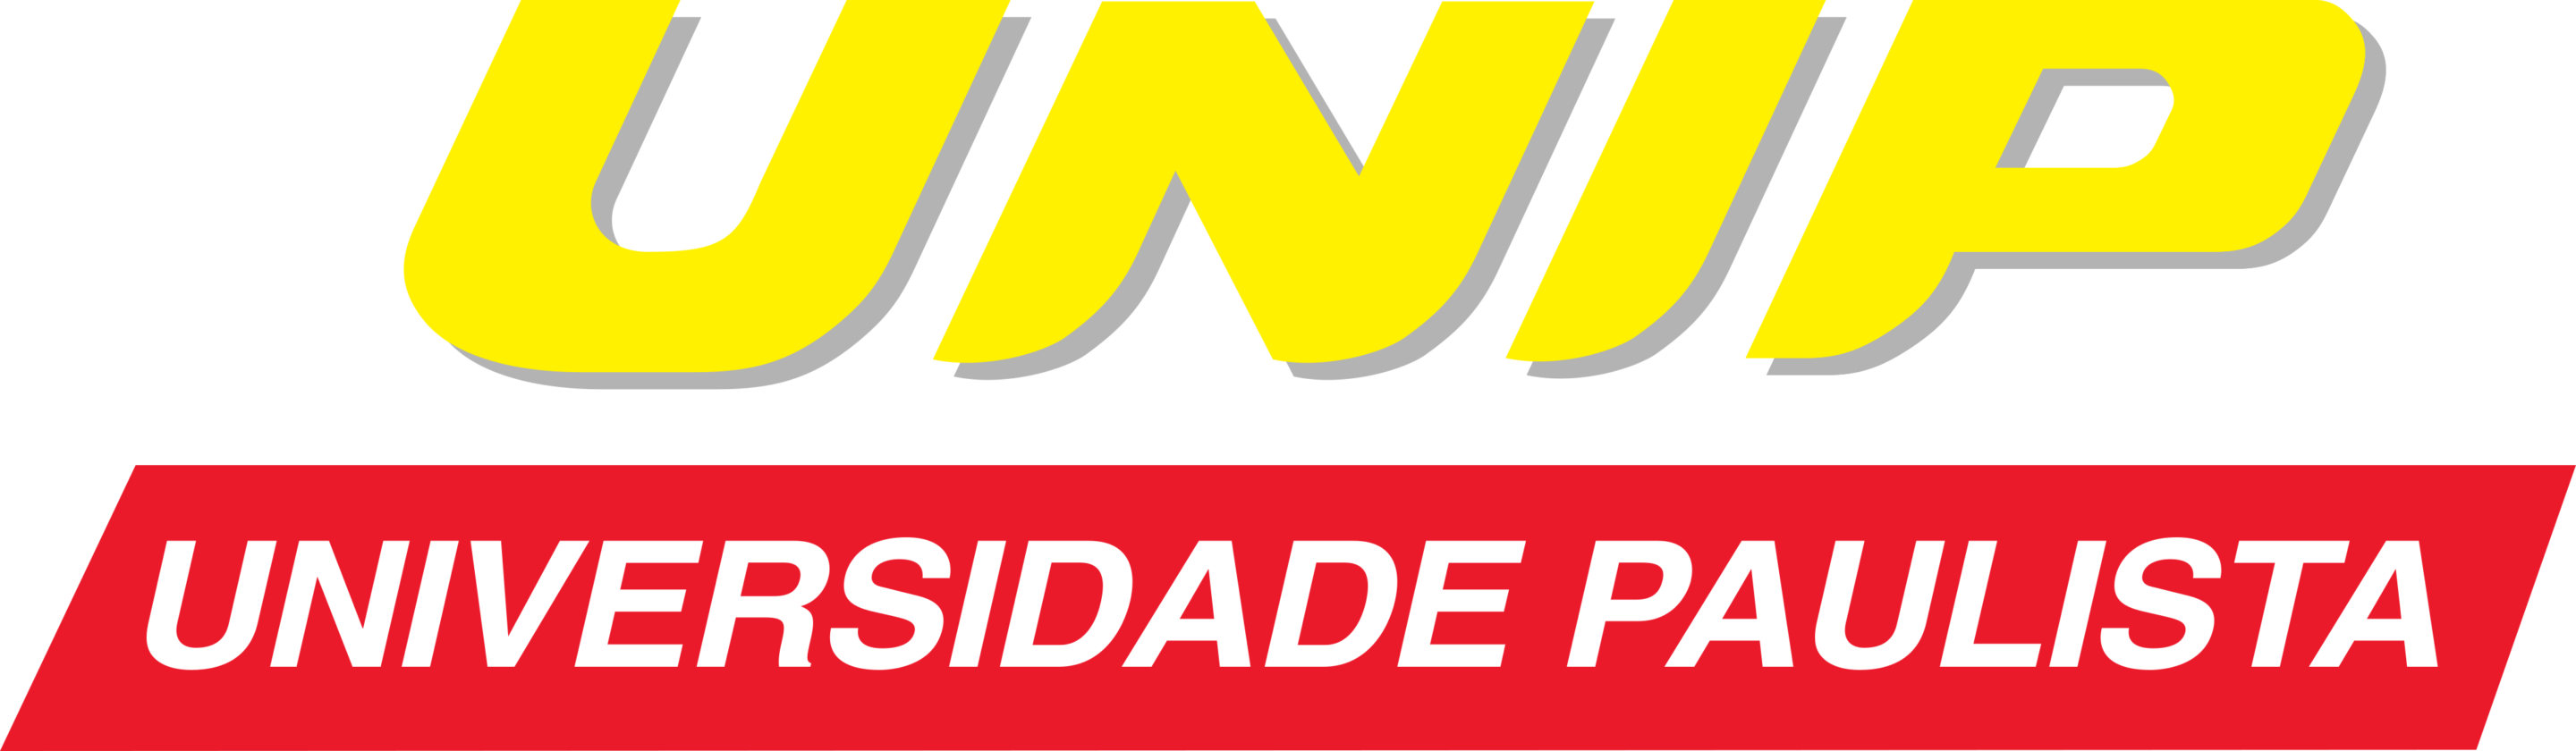 unip-logo